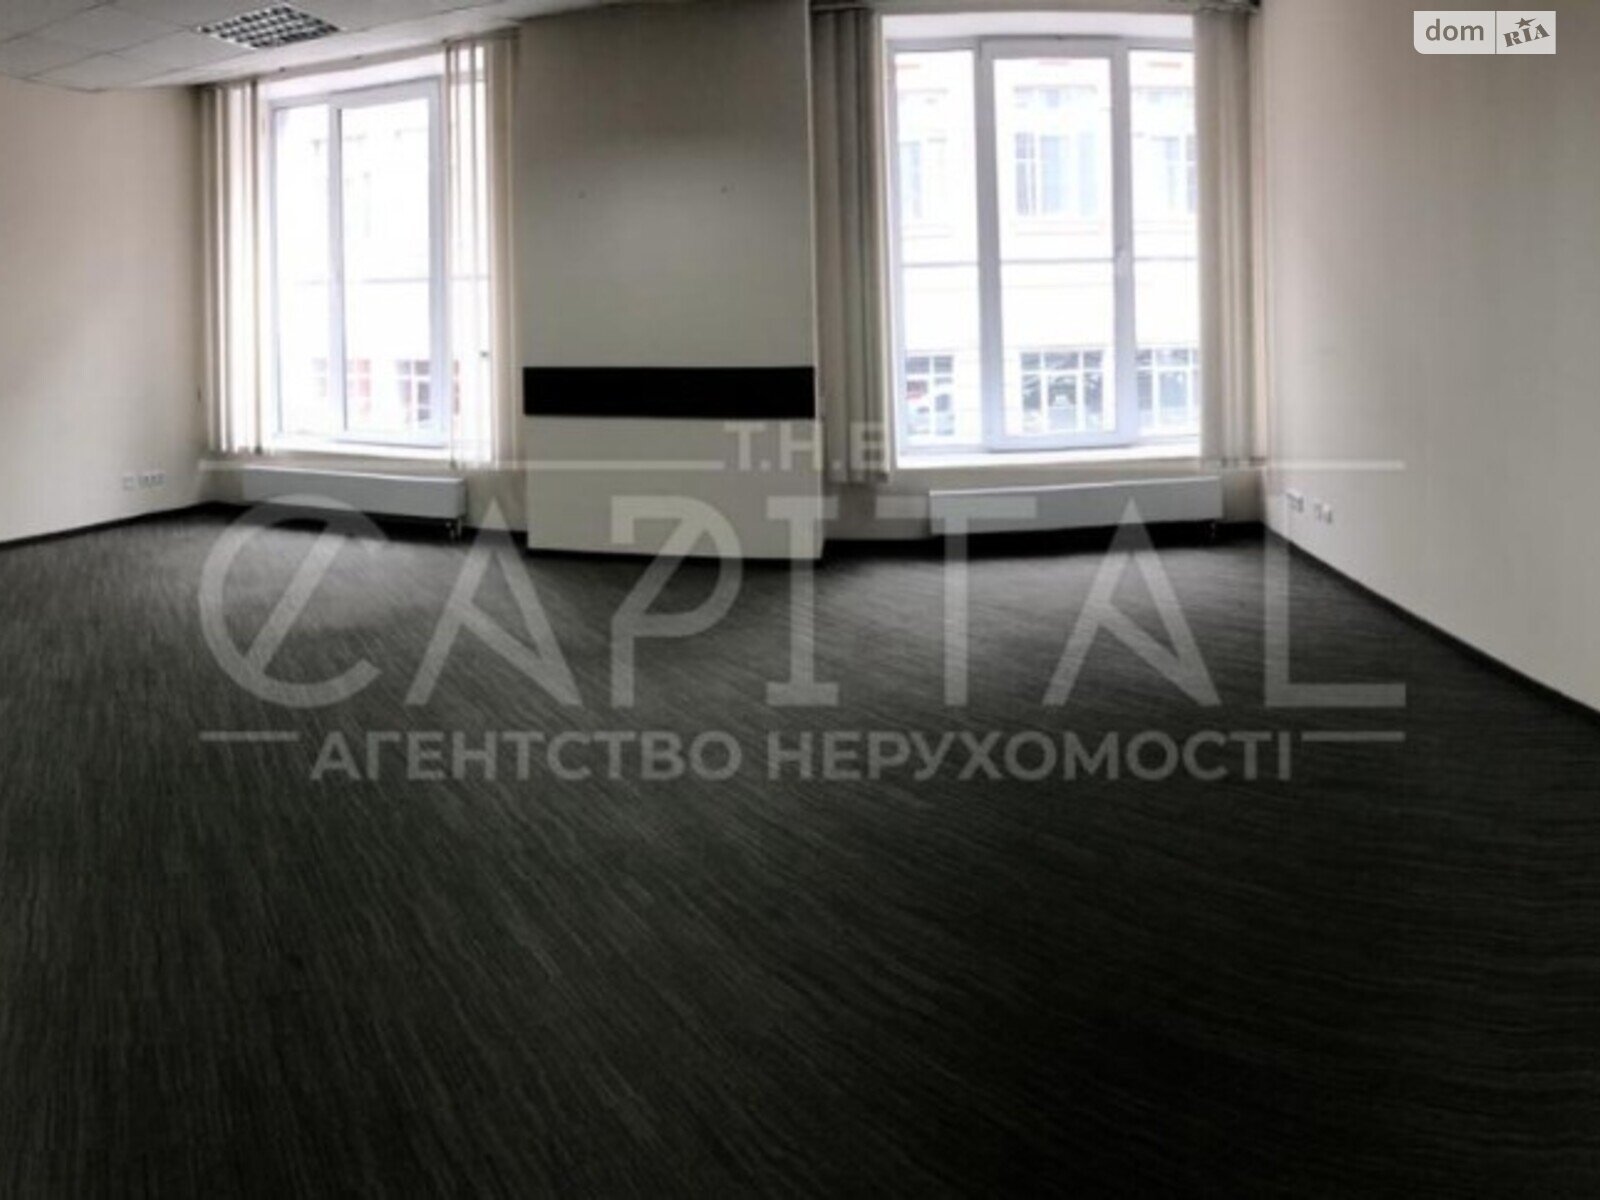 Аренда офисного помещения в Киеве, Николая Гринченко улица 4В, помещений - 6, этаж - 1 фото 1